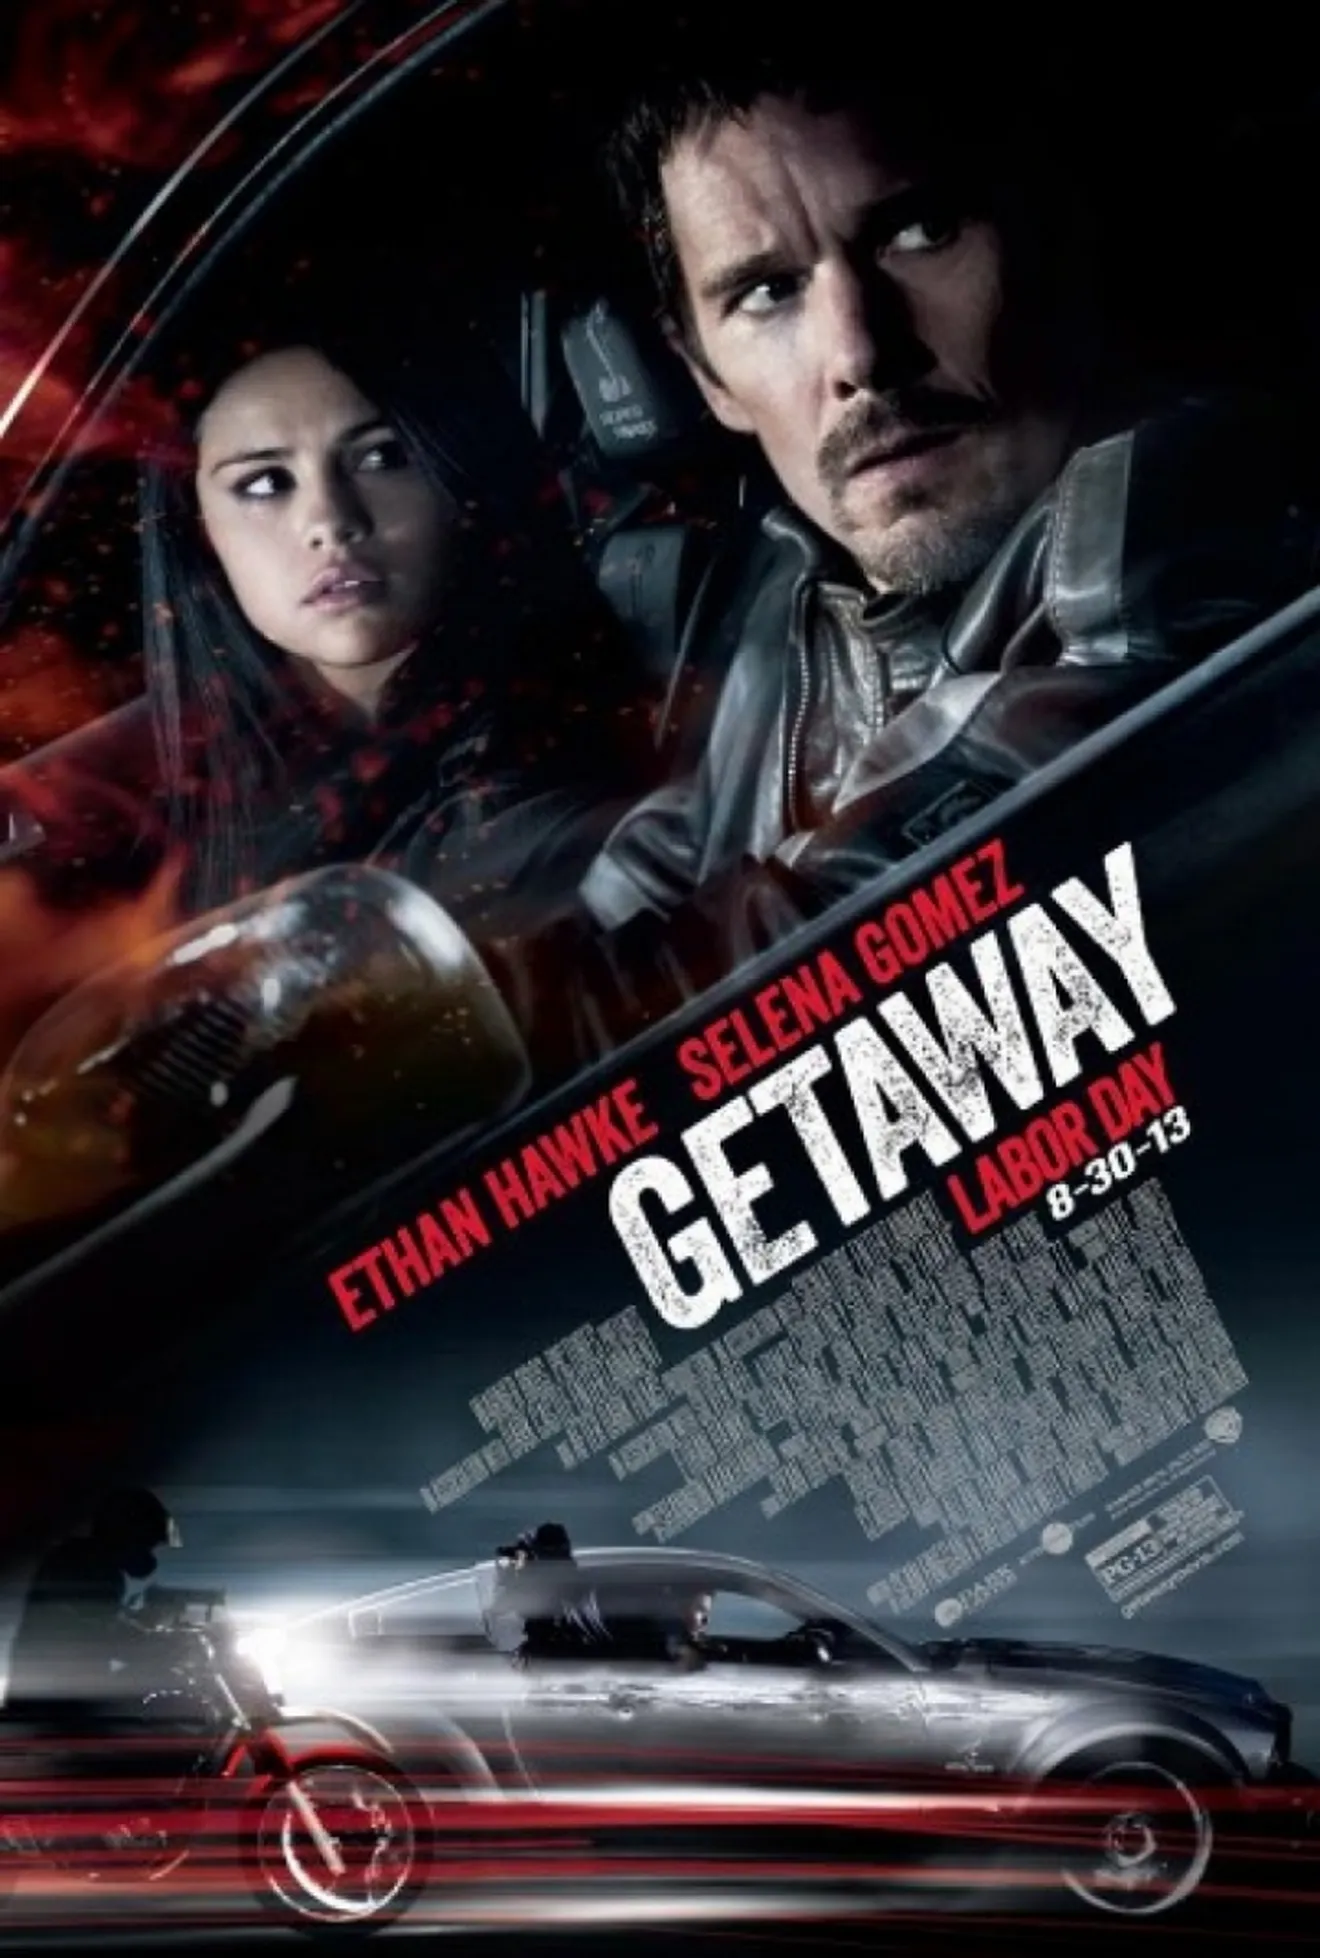 Un Shelby GT500 y un centenar de coches destrozados en la última película de Ethan Hawke y Selena Gómez